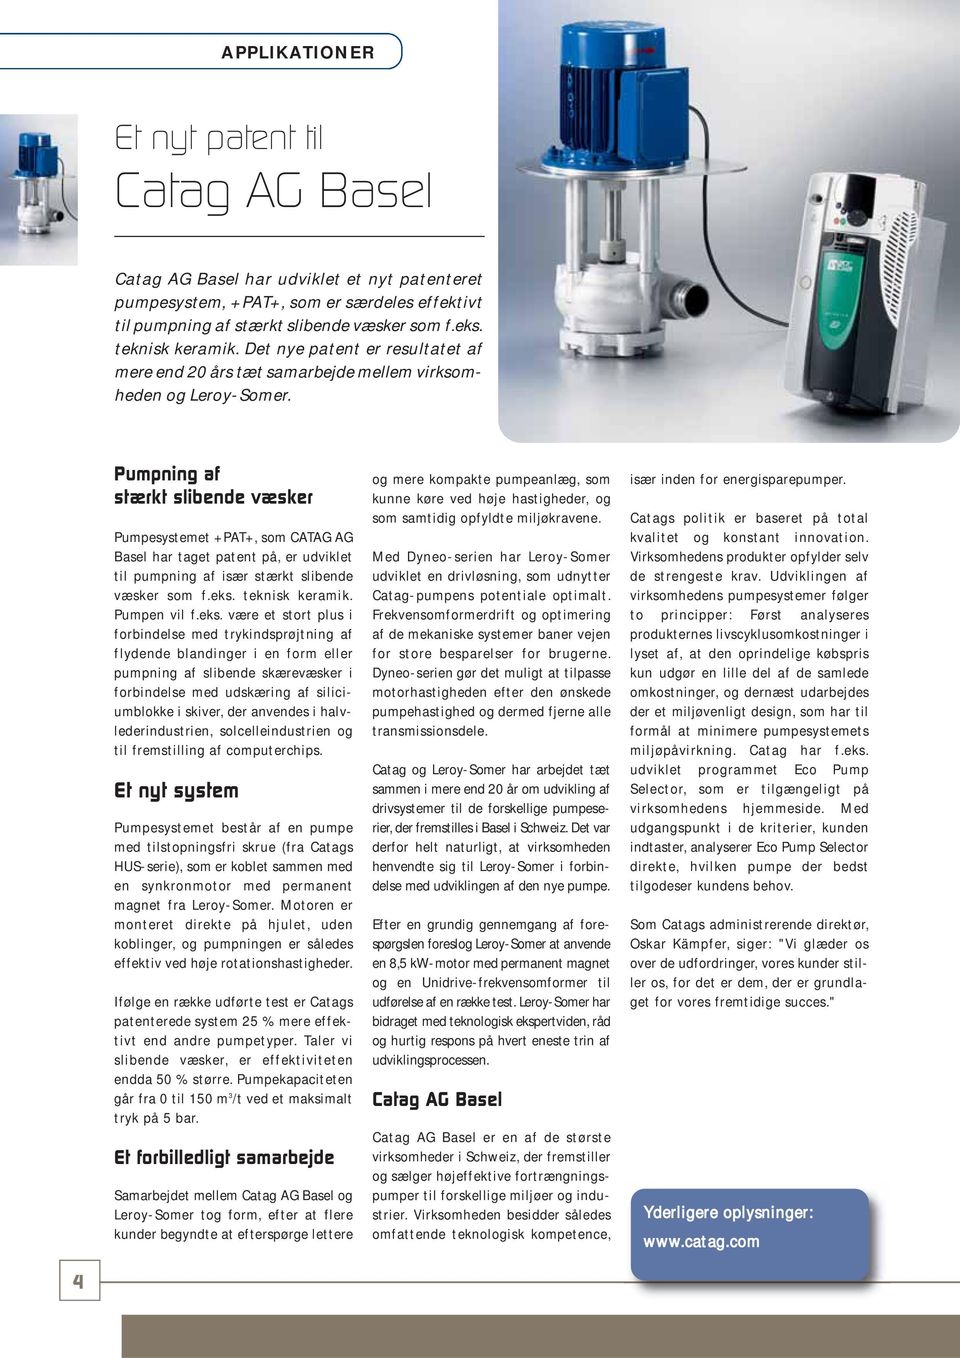 Pumpning af stærkt slibende væsker Pumpesystemet +PAT+, som CATAG AG Basel har taget patent på, er udviklet til pumpning af især stærkt slibende væsker som f.eks.